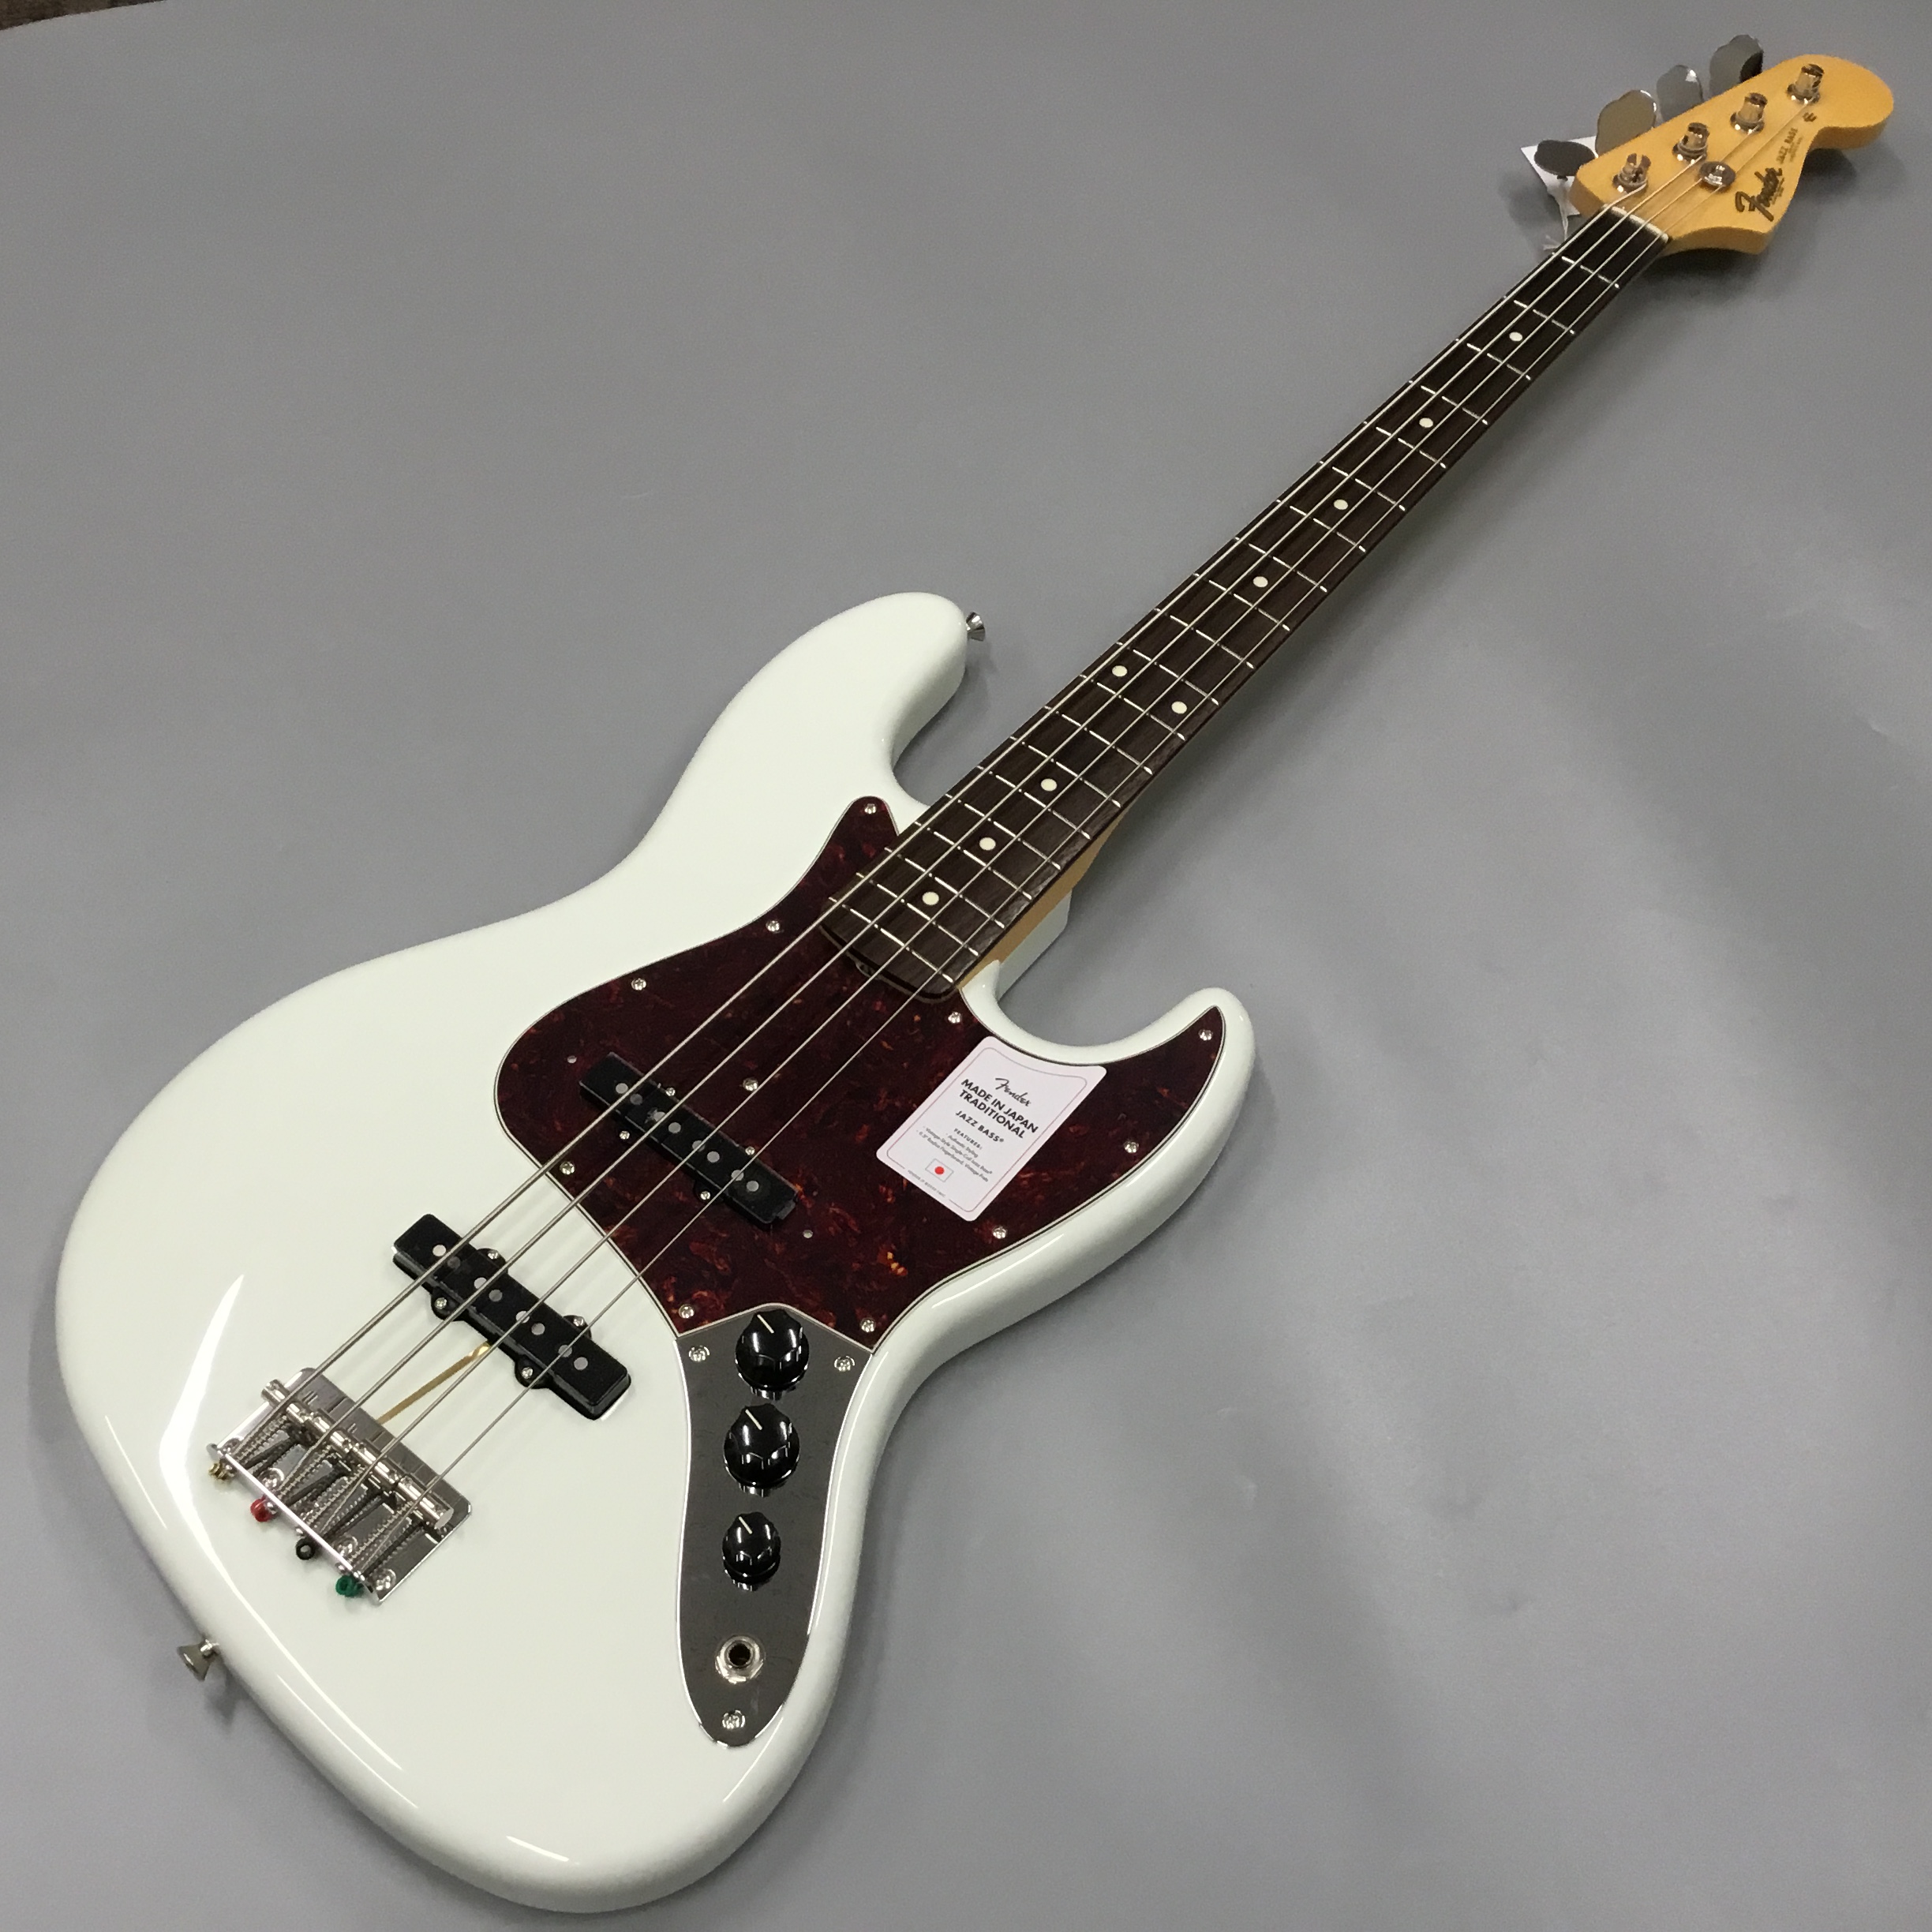 エレキベース】Fender MadeInJapanシリーズTraditional60sジャズベース